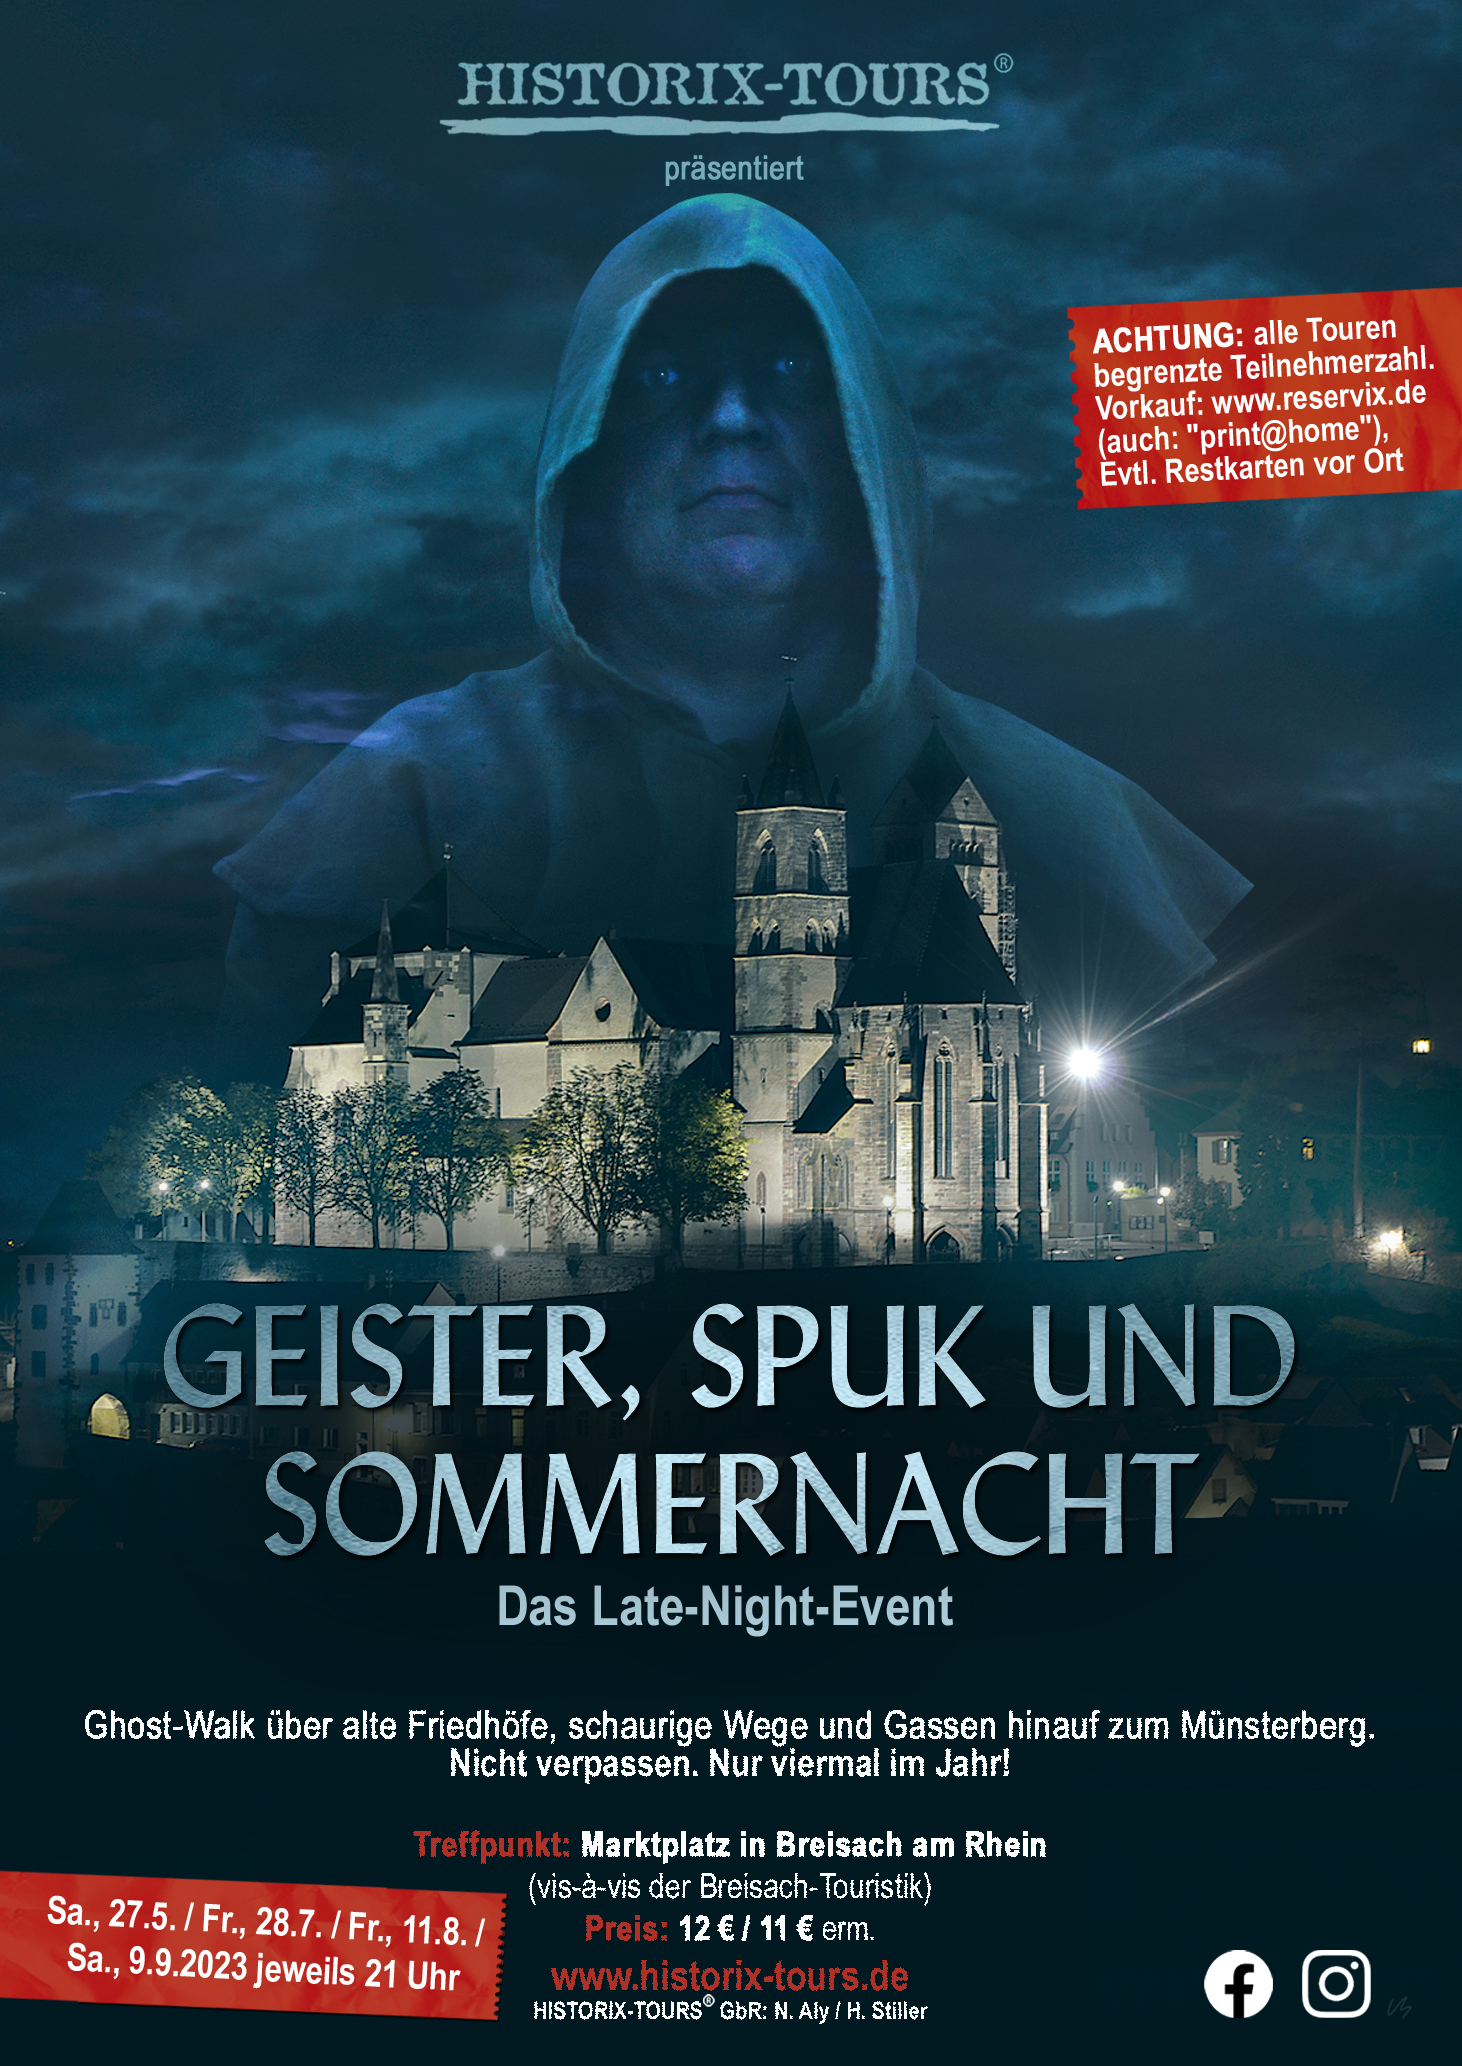 Late-Night-Tour: "Geister, Spuk und Sommernacht" - Ghost-Walk in Breisach (ohne Anmeldung möglich)